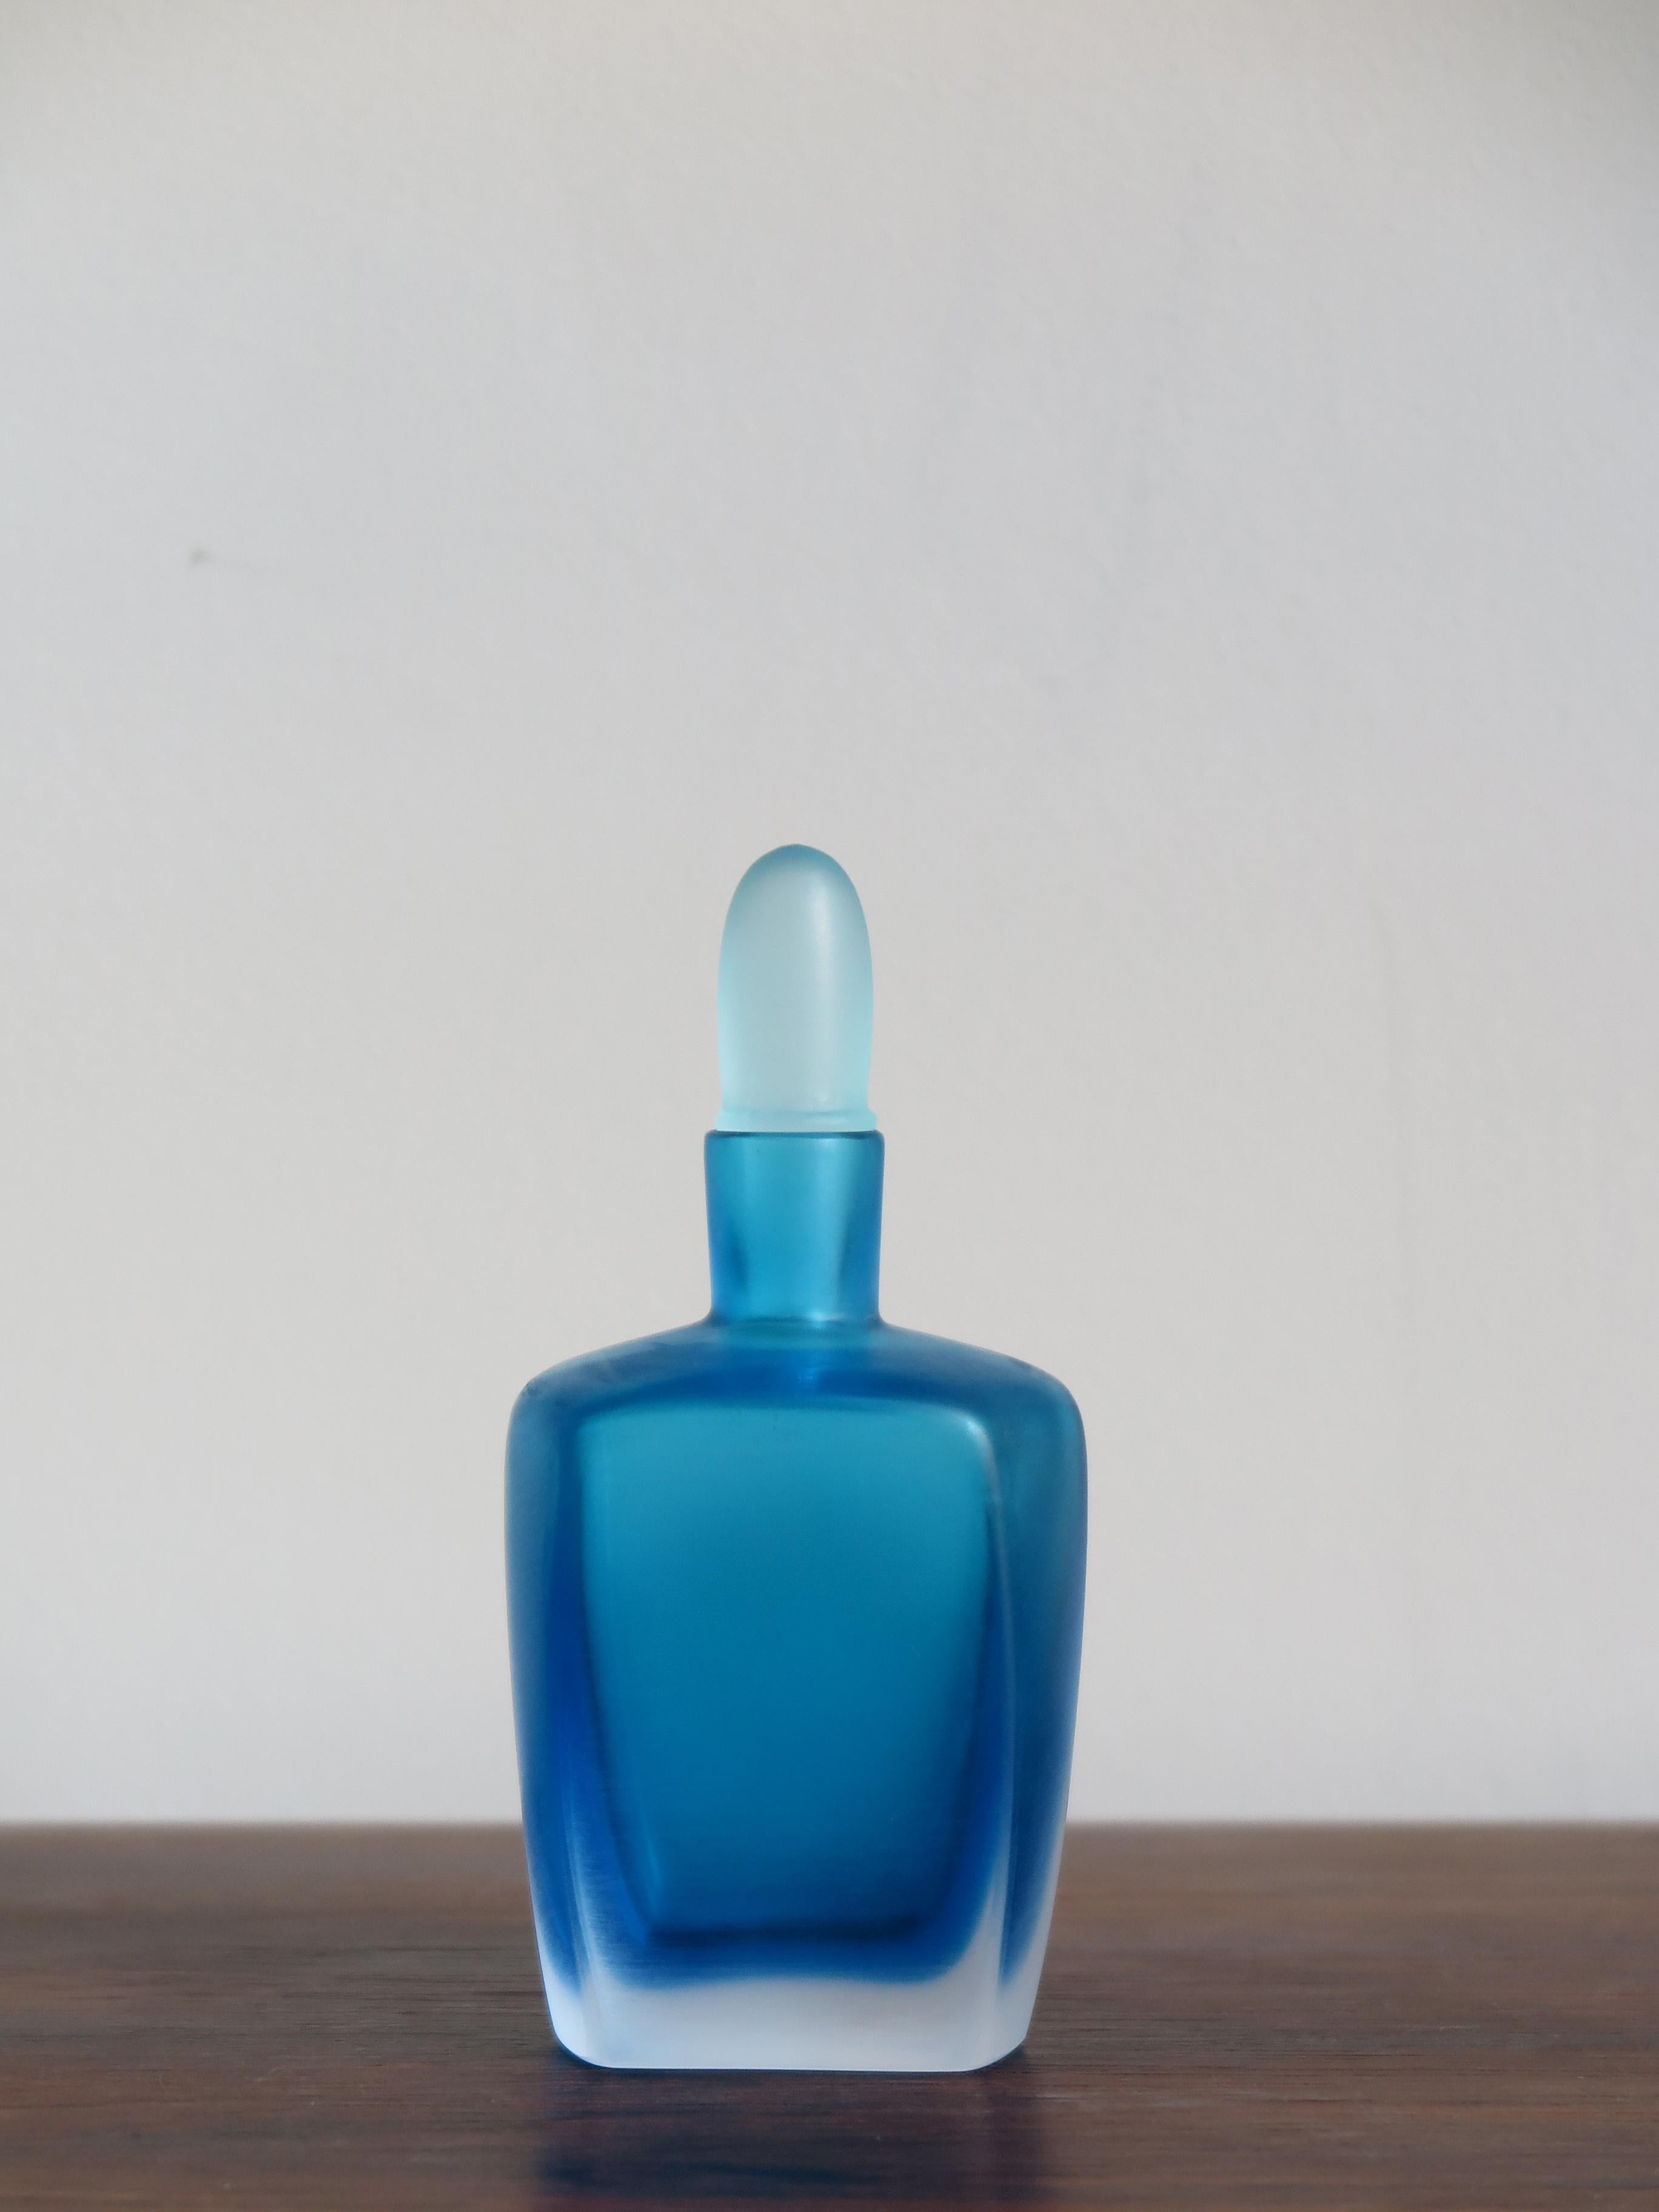 Post-Modern Venini Murano Italy Blue Glass Bottle Serie “Velati”, 1992